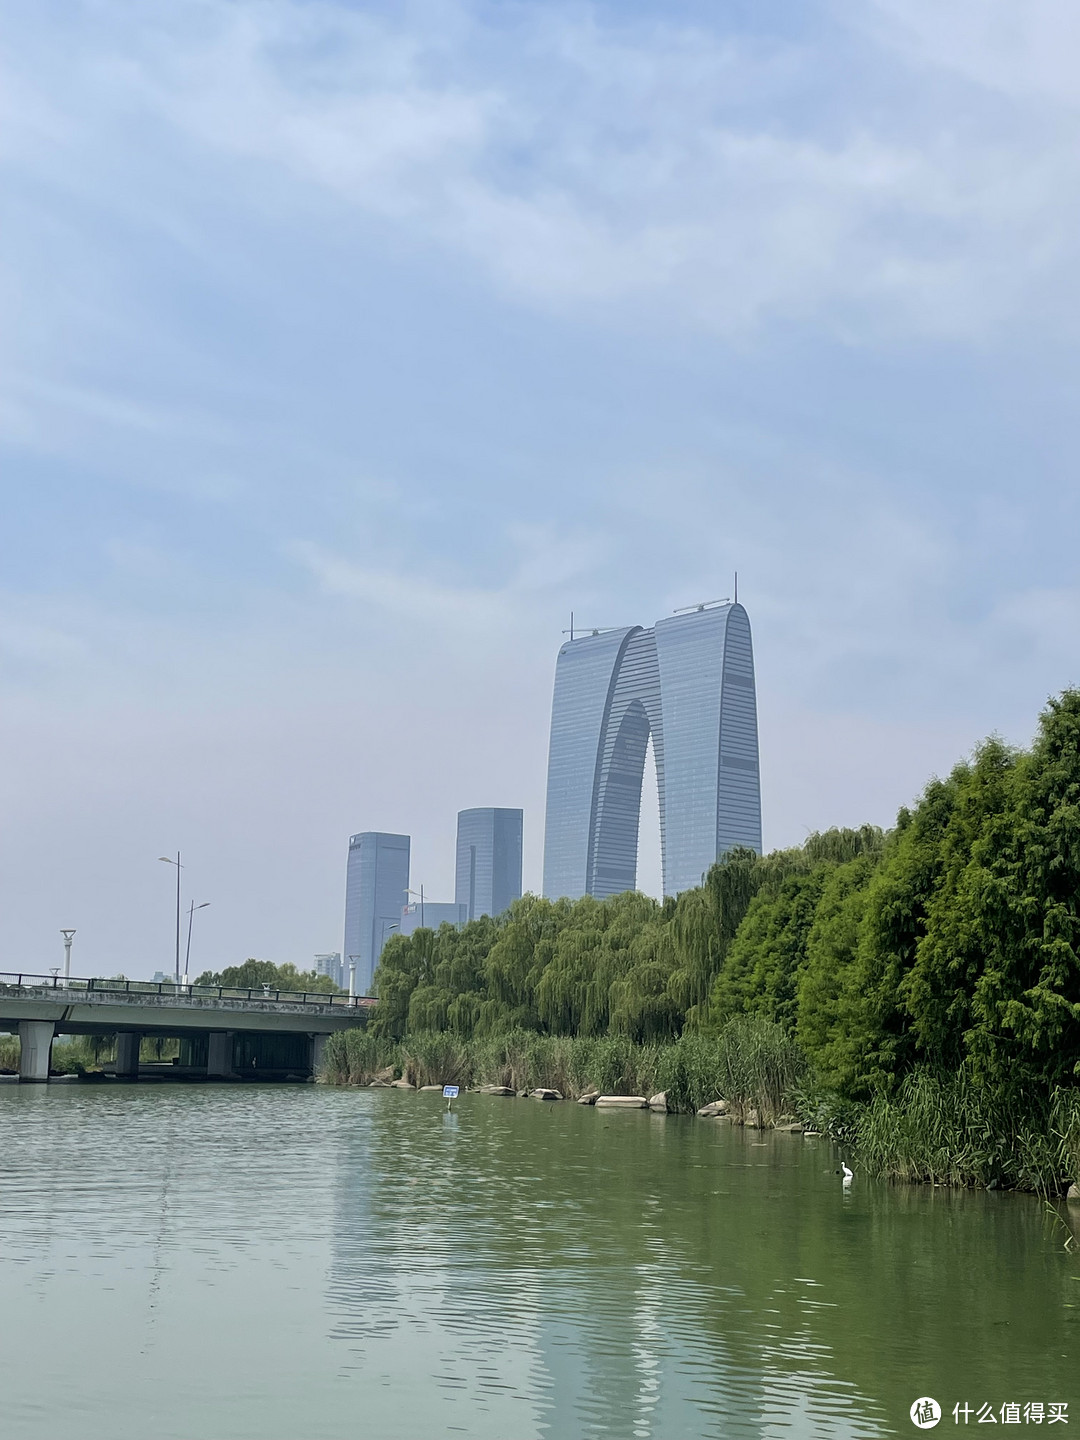 不靠吹不靠推 真续航200公里 电动自行车骑遍上海苏州两地